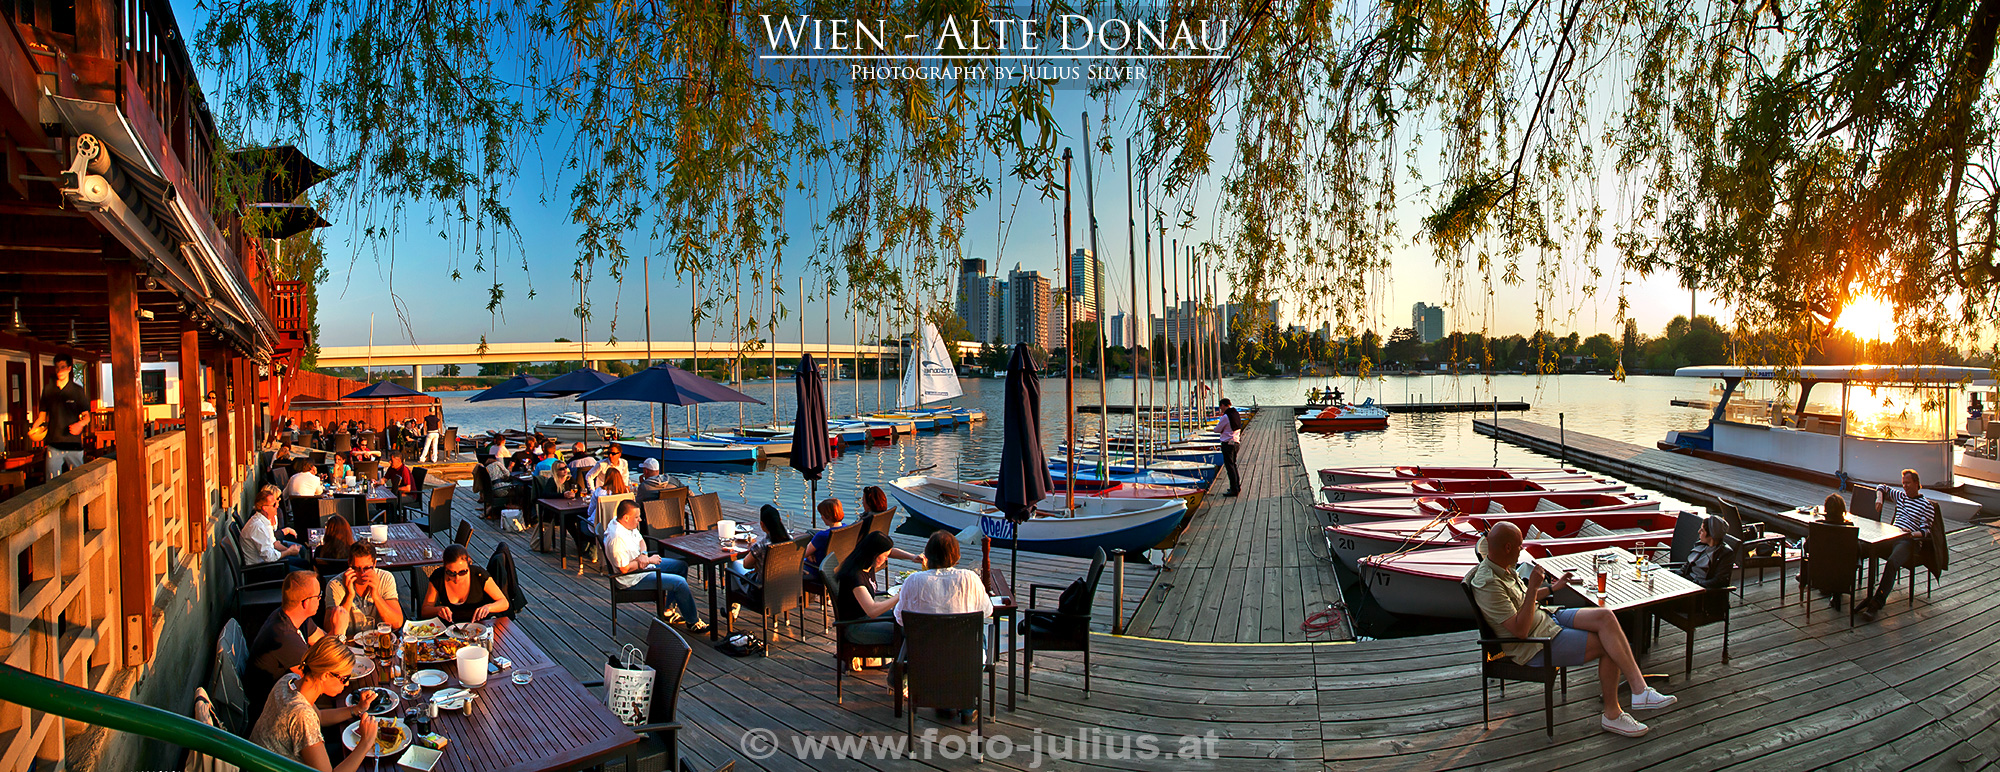 W5712_Alte_Donau.jpg, 1,3MB